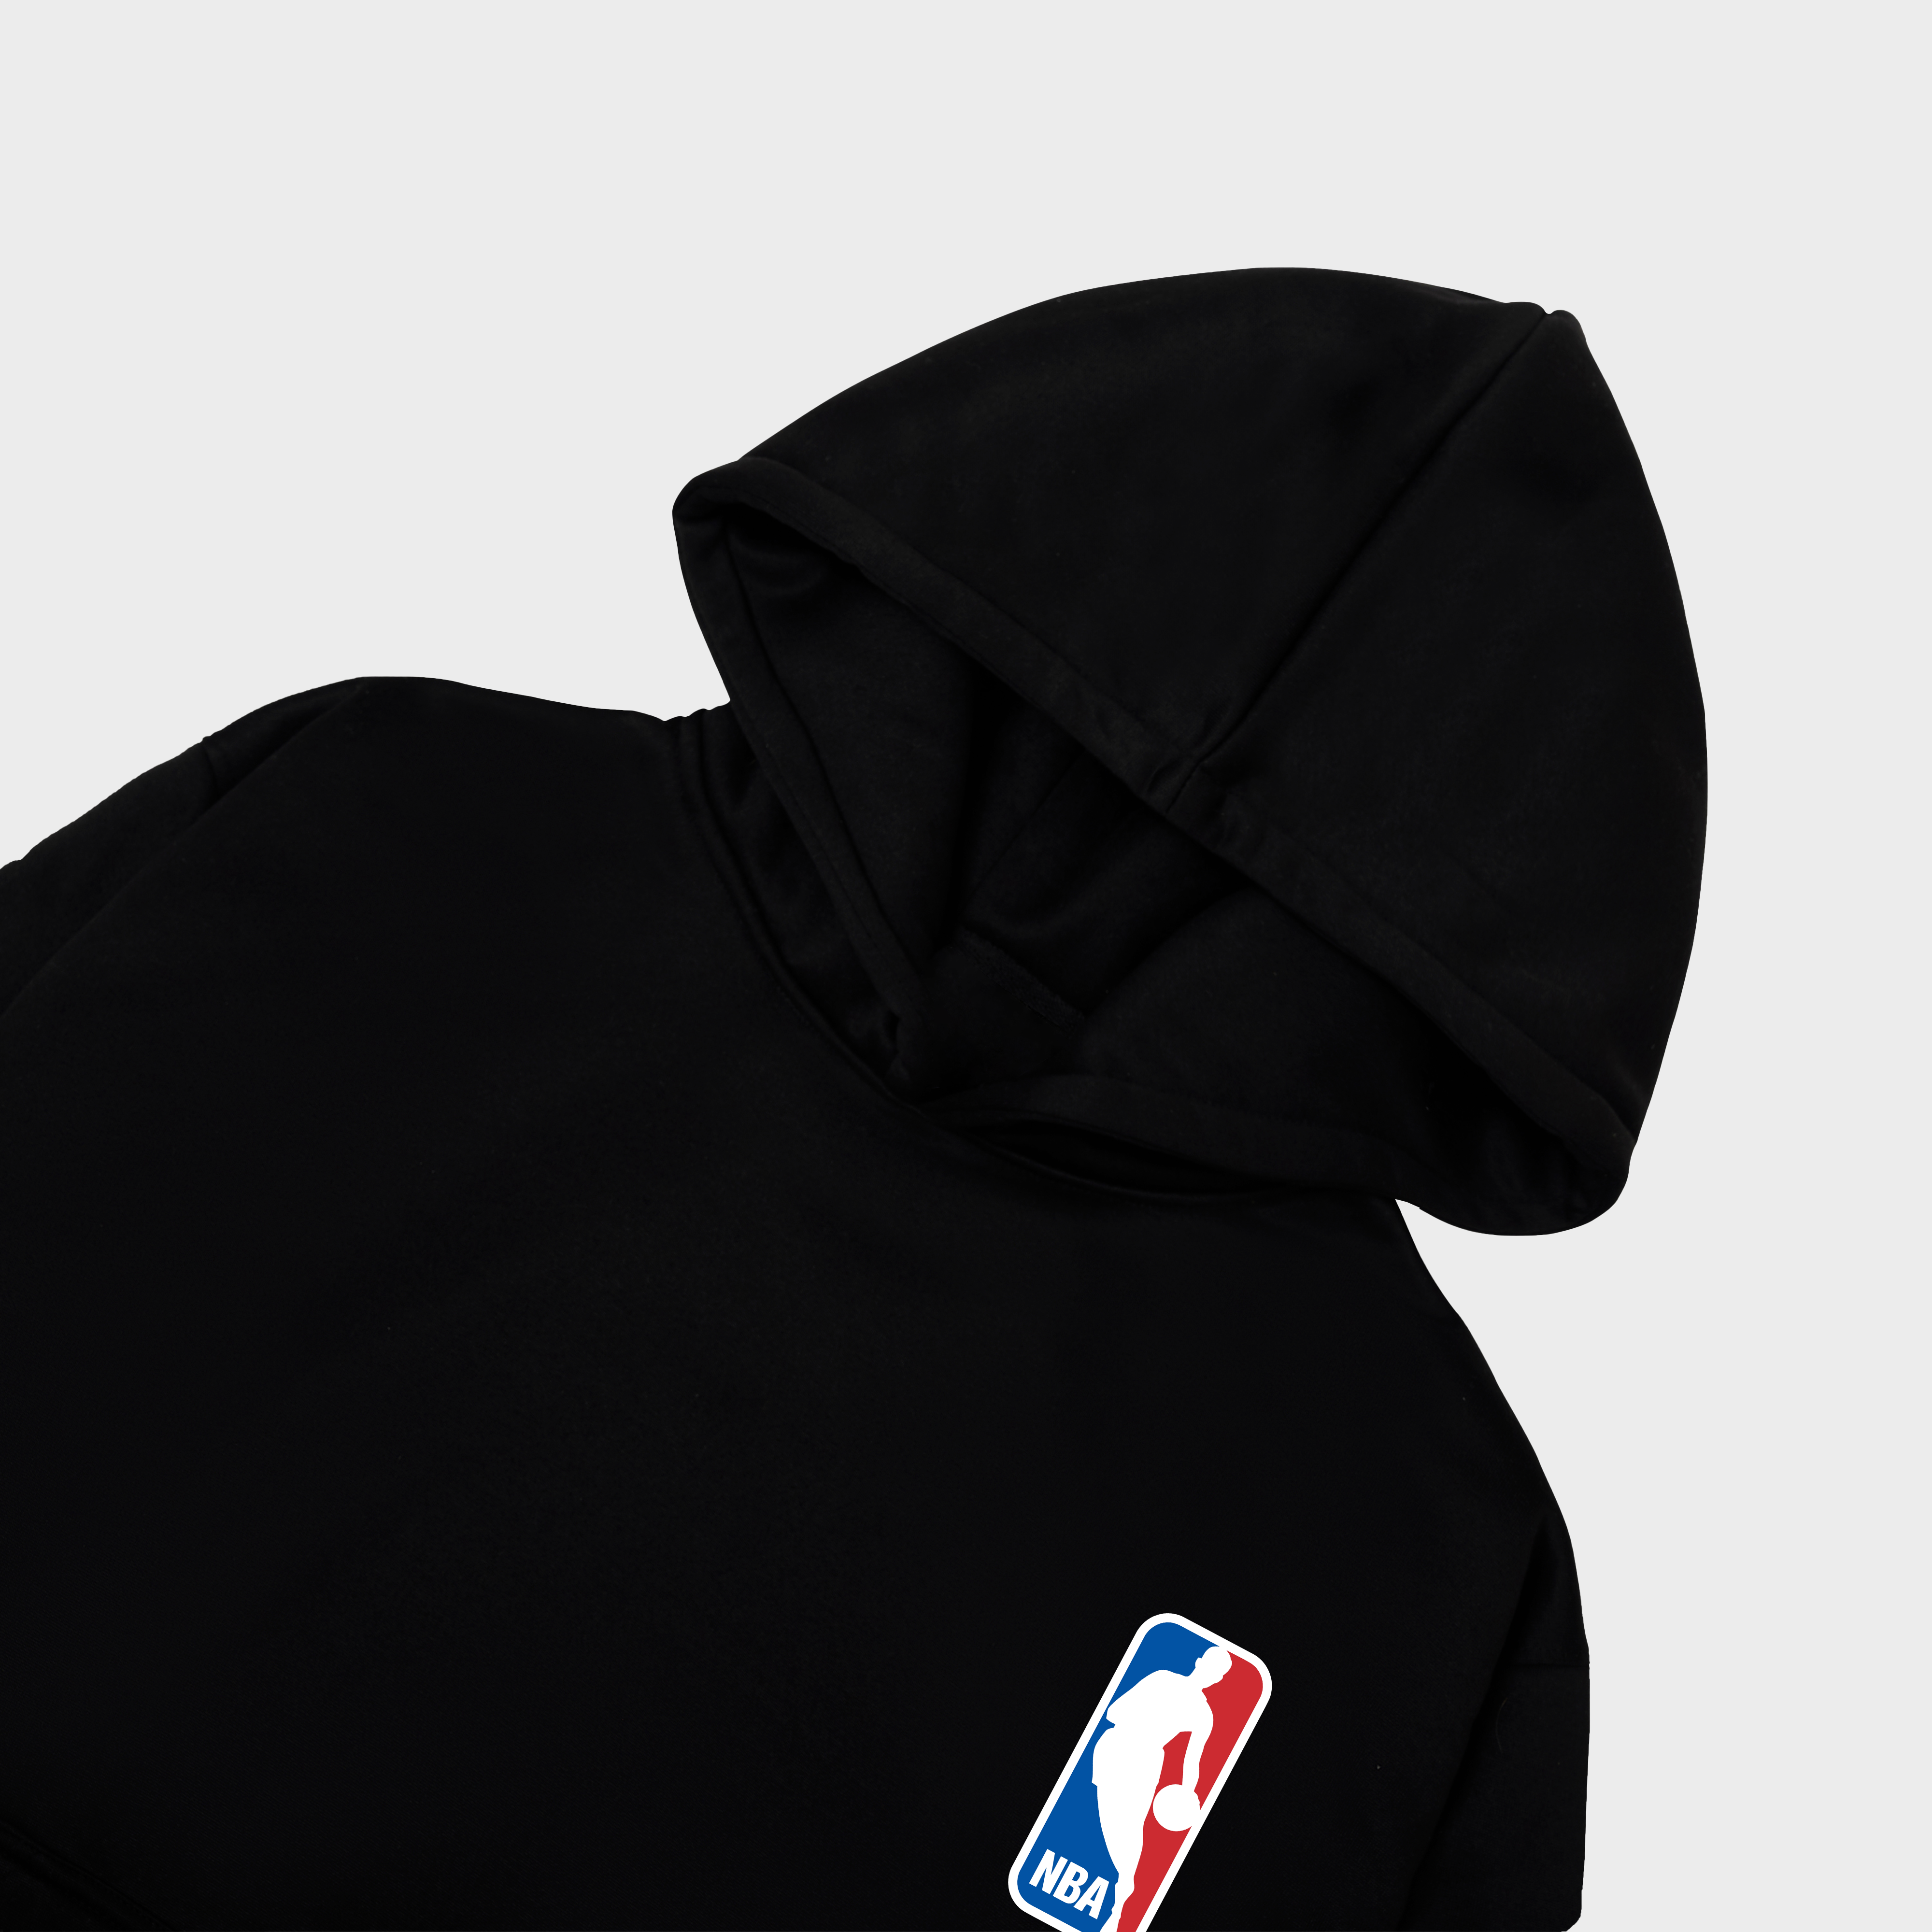 NBA Logo Classic Hoodie